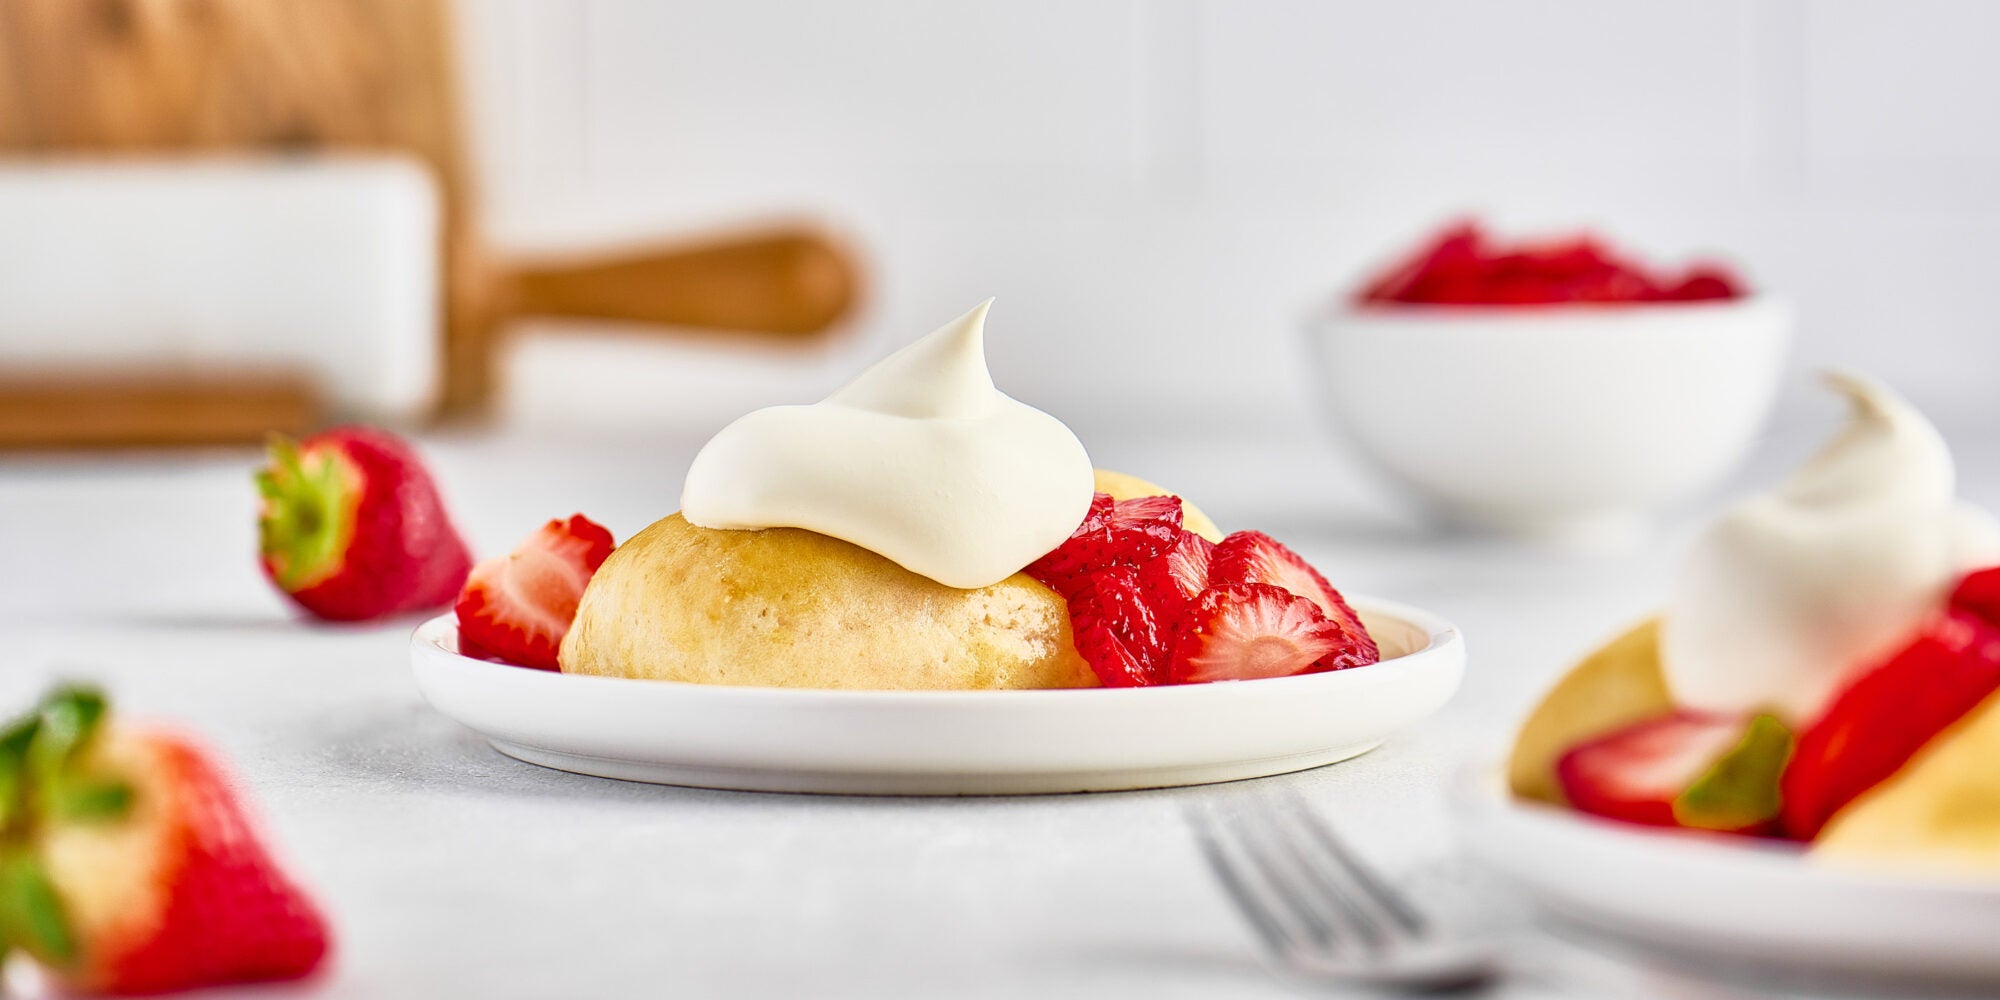 Shortcake aux fraises simple